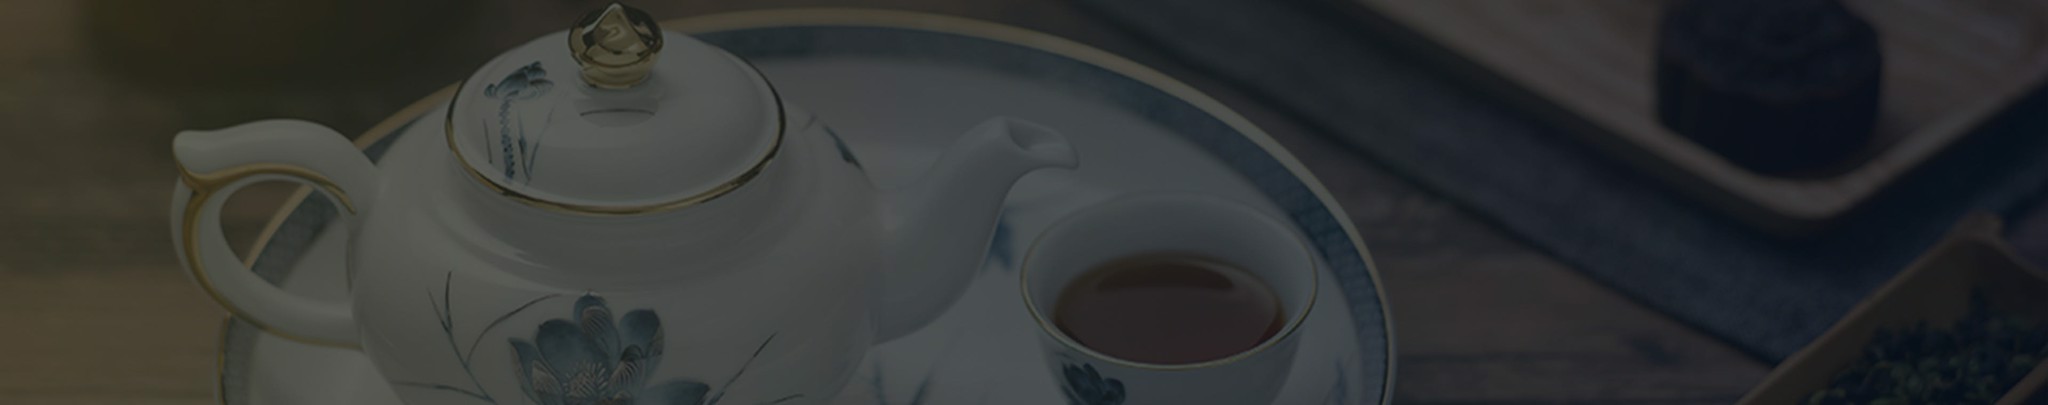 Bình trà/cà phê - Minh Long I